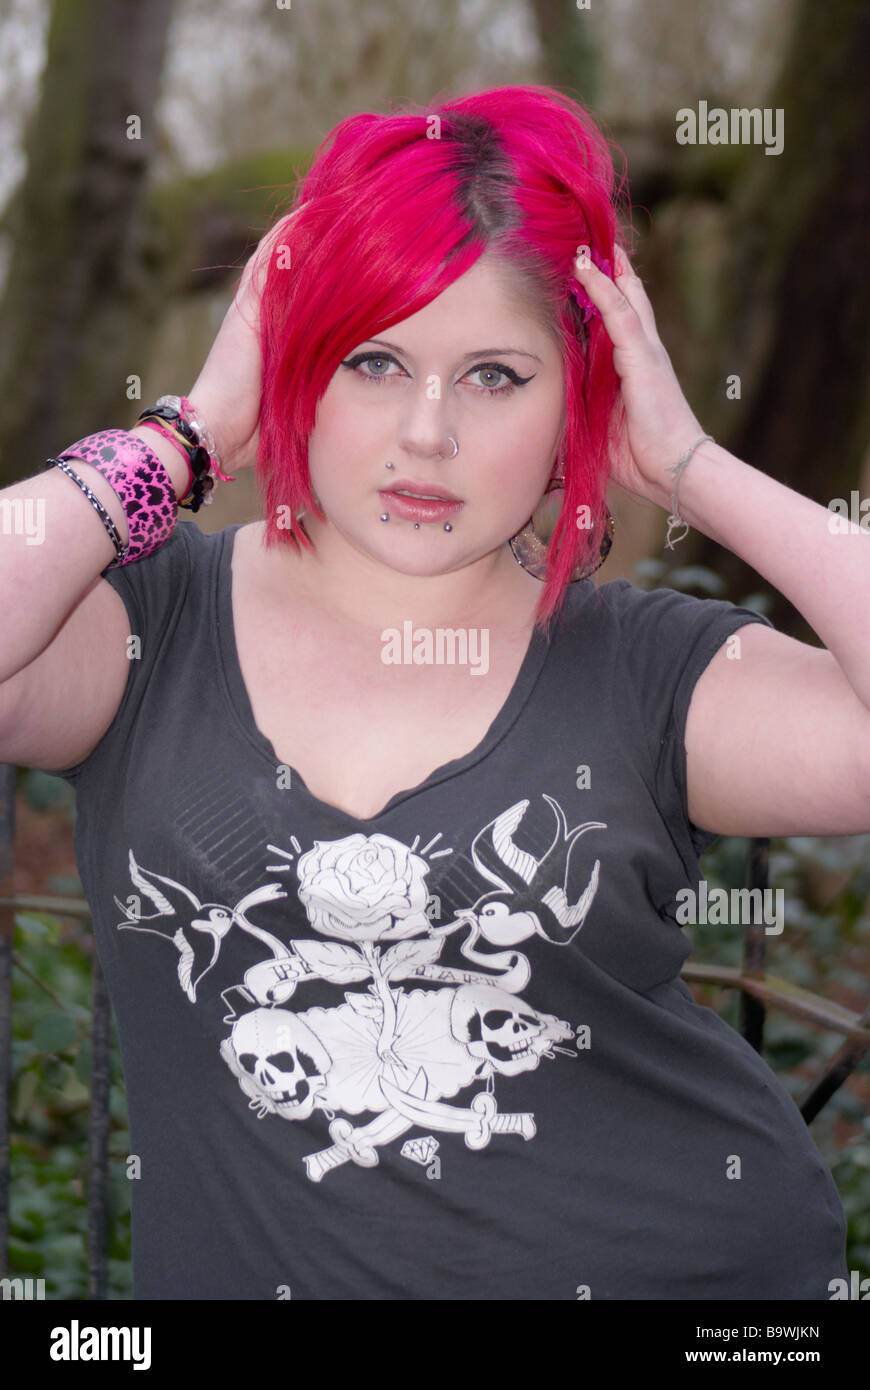 Punk Glam style female teenager model Stock Photo